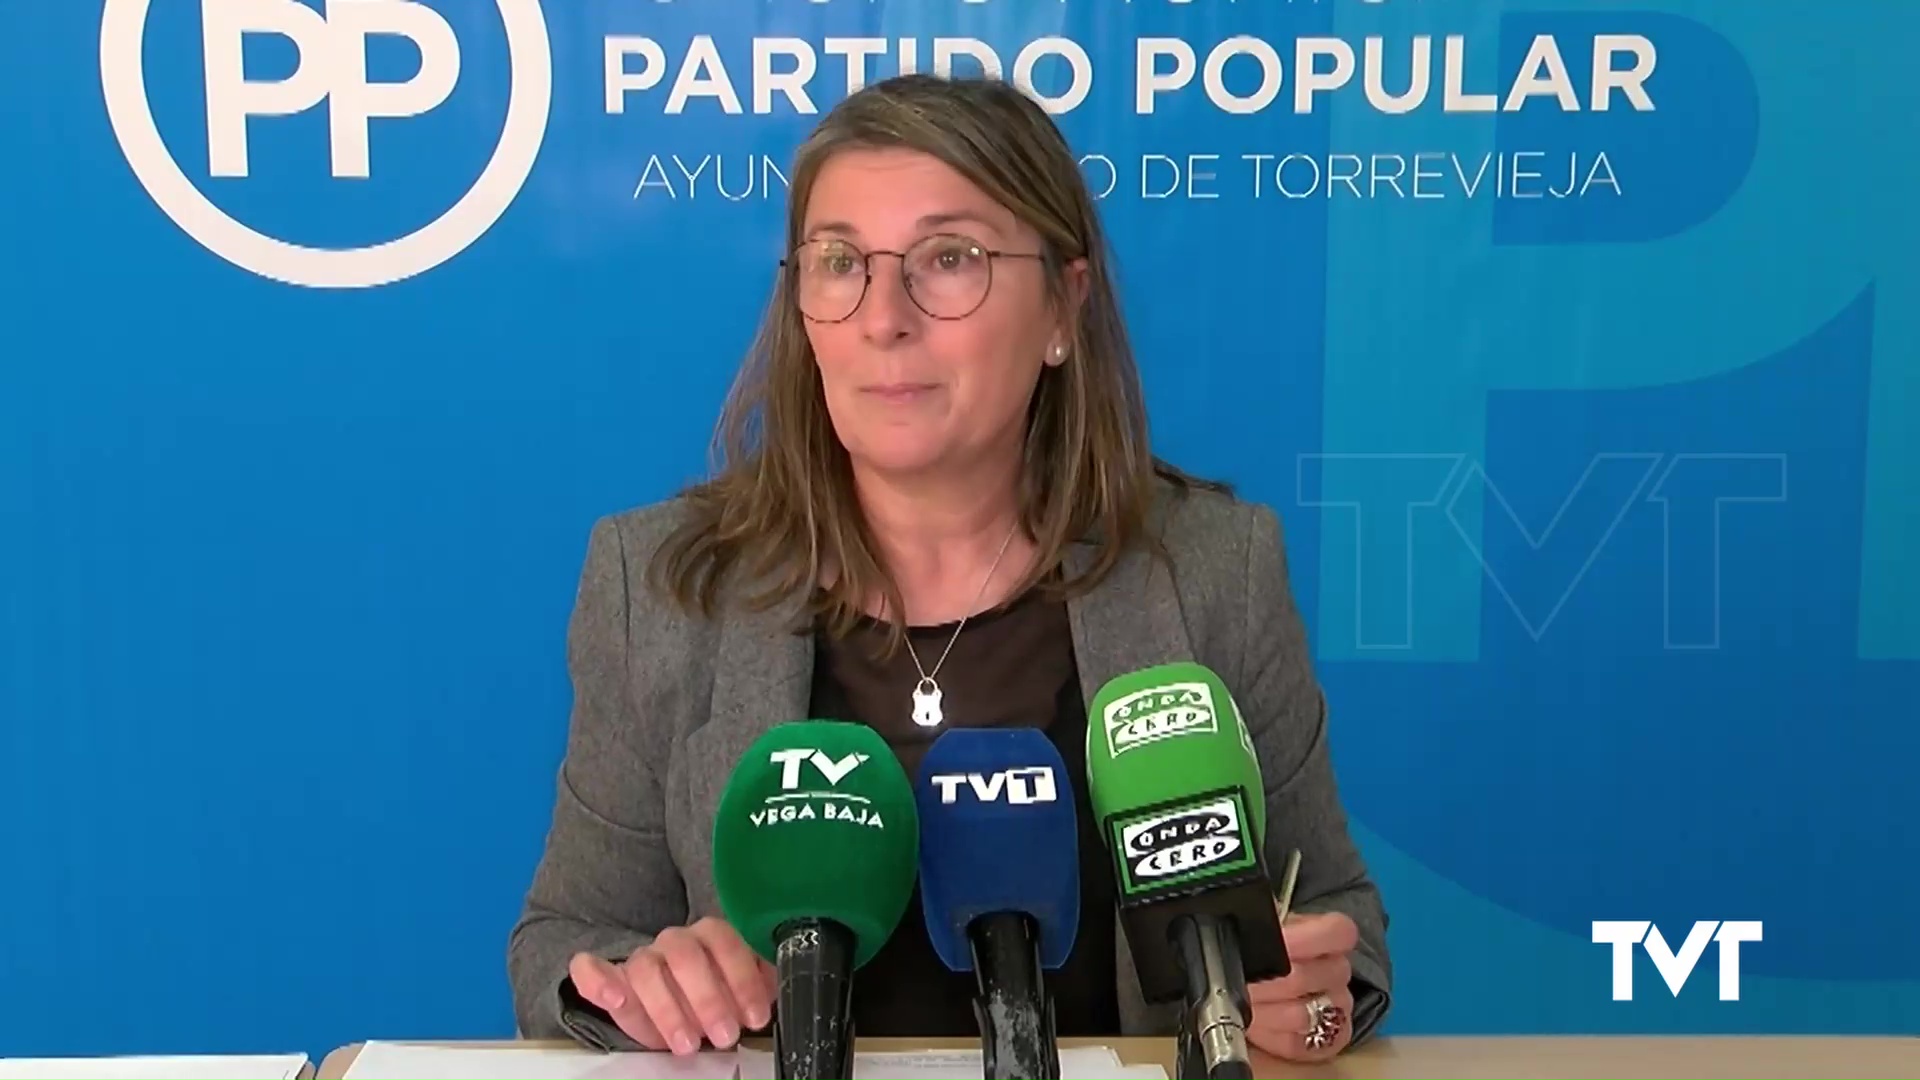 Imagen de Agustina Esteve podría ser la nueva Directora Territorial de Presidencia de la GVA en Alicante